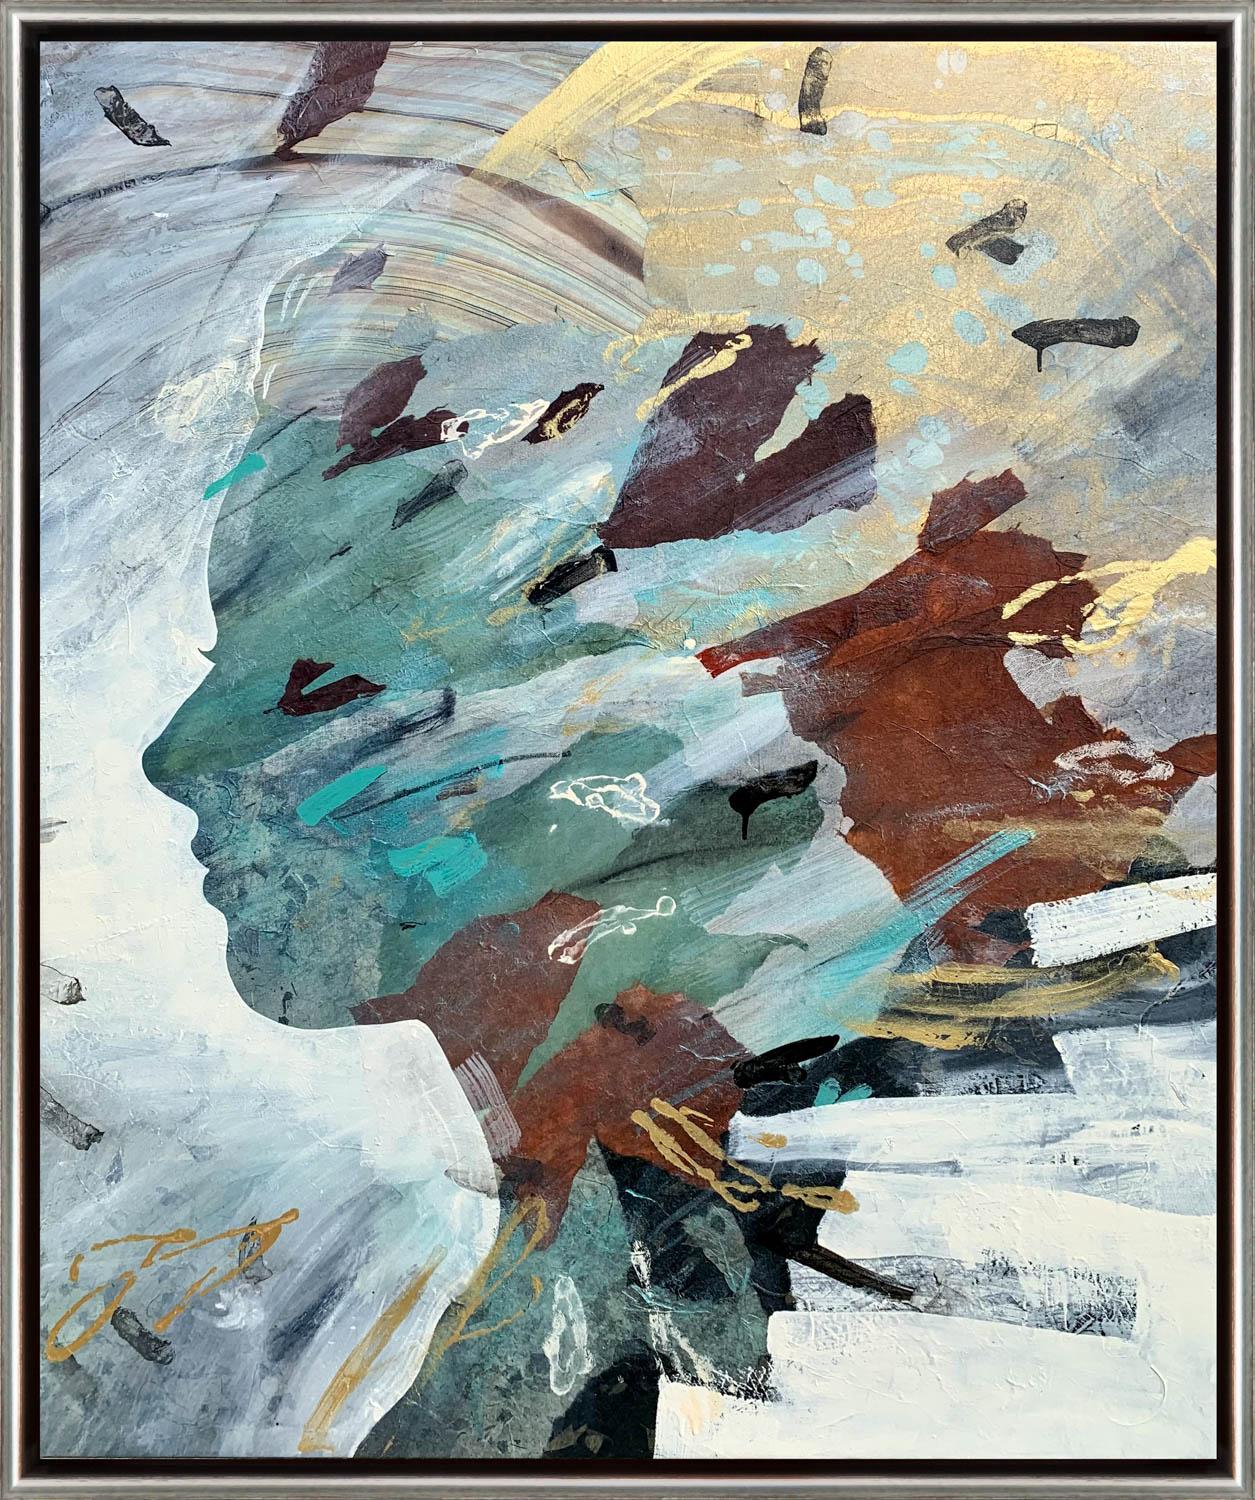 "Current Cameo" Peinture contemporaine en mixed media sur toile encadrée par une Silhouette - Mixed Media Art de Christopher Peter